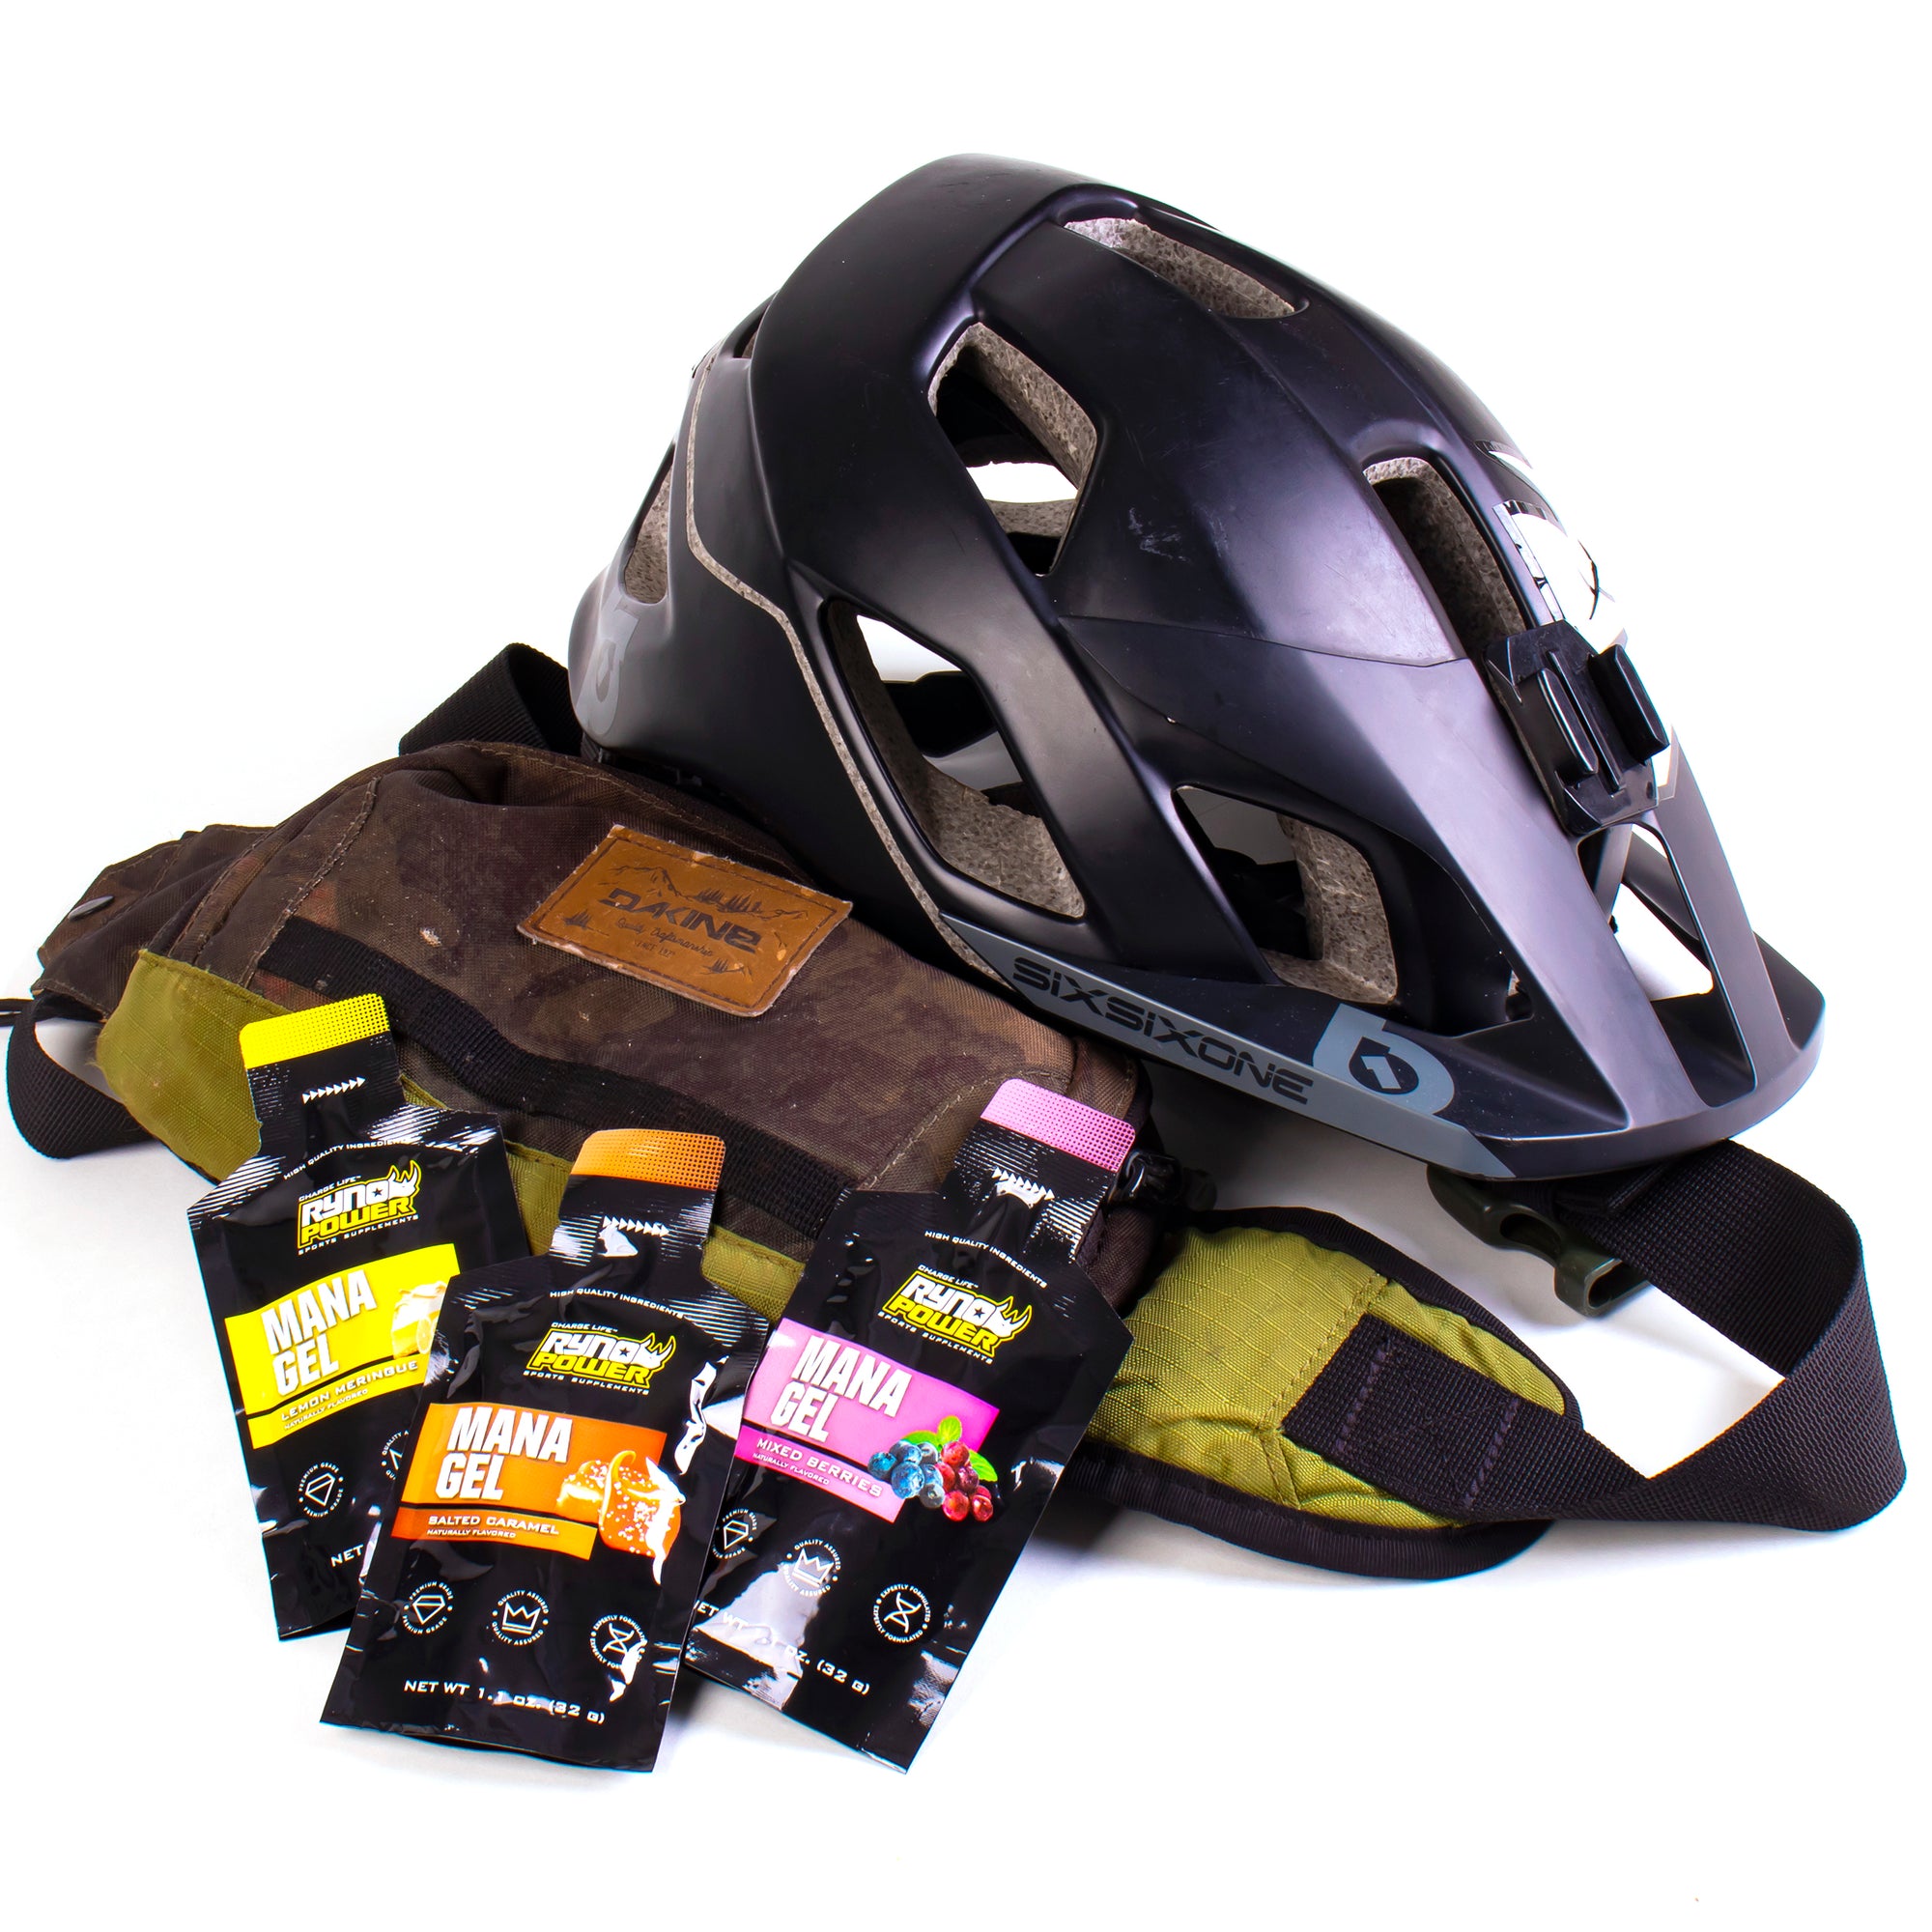 Pile of gear - helmet, hip pack, gels